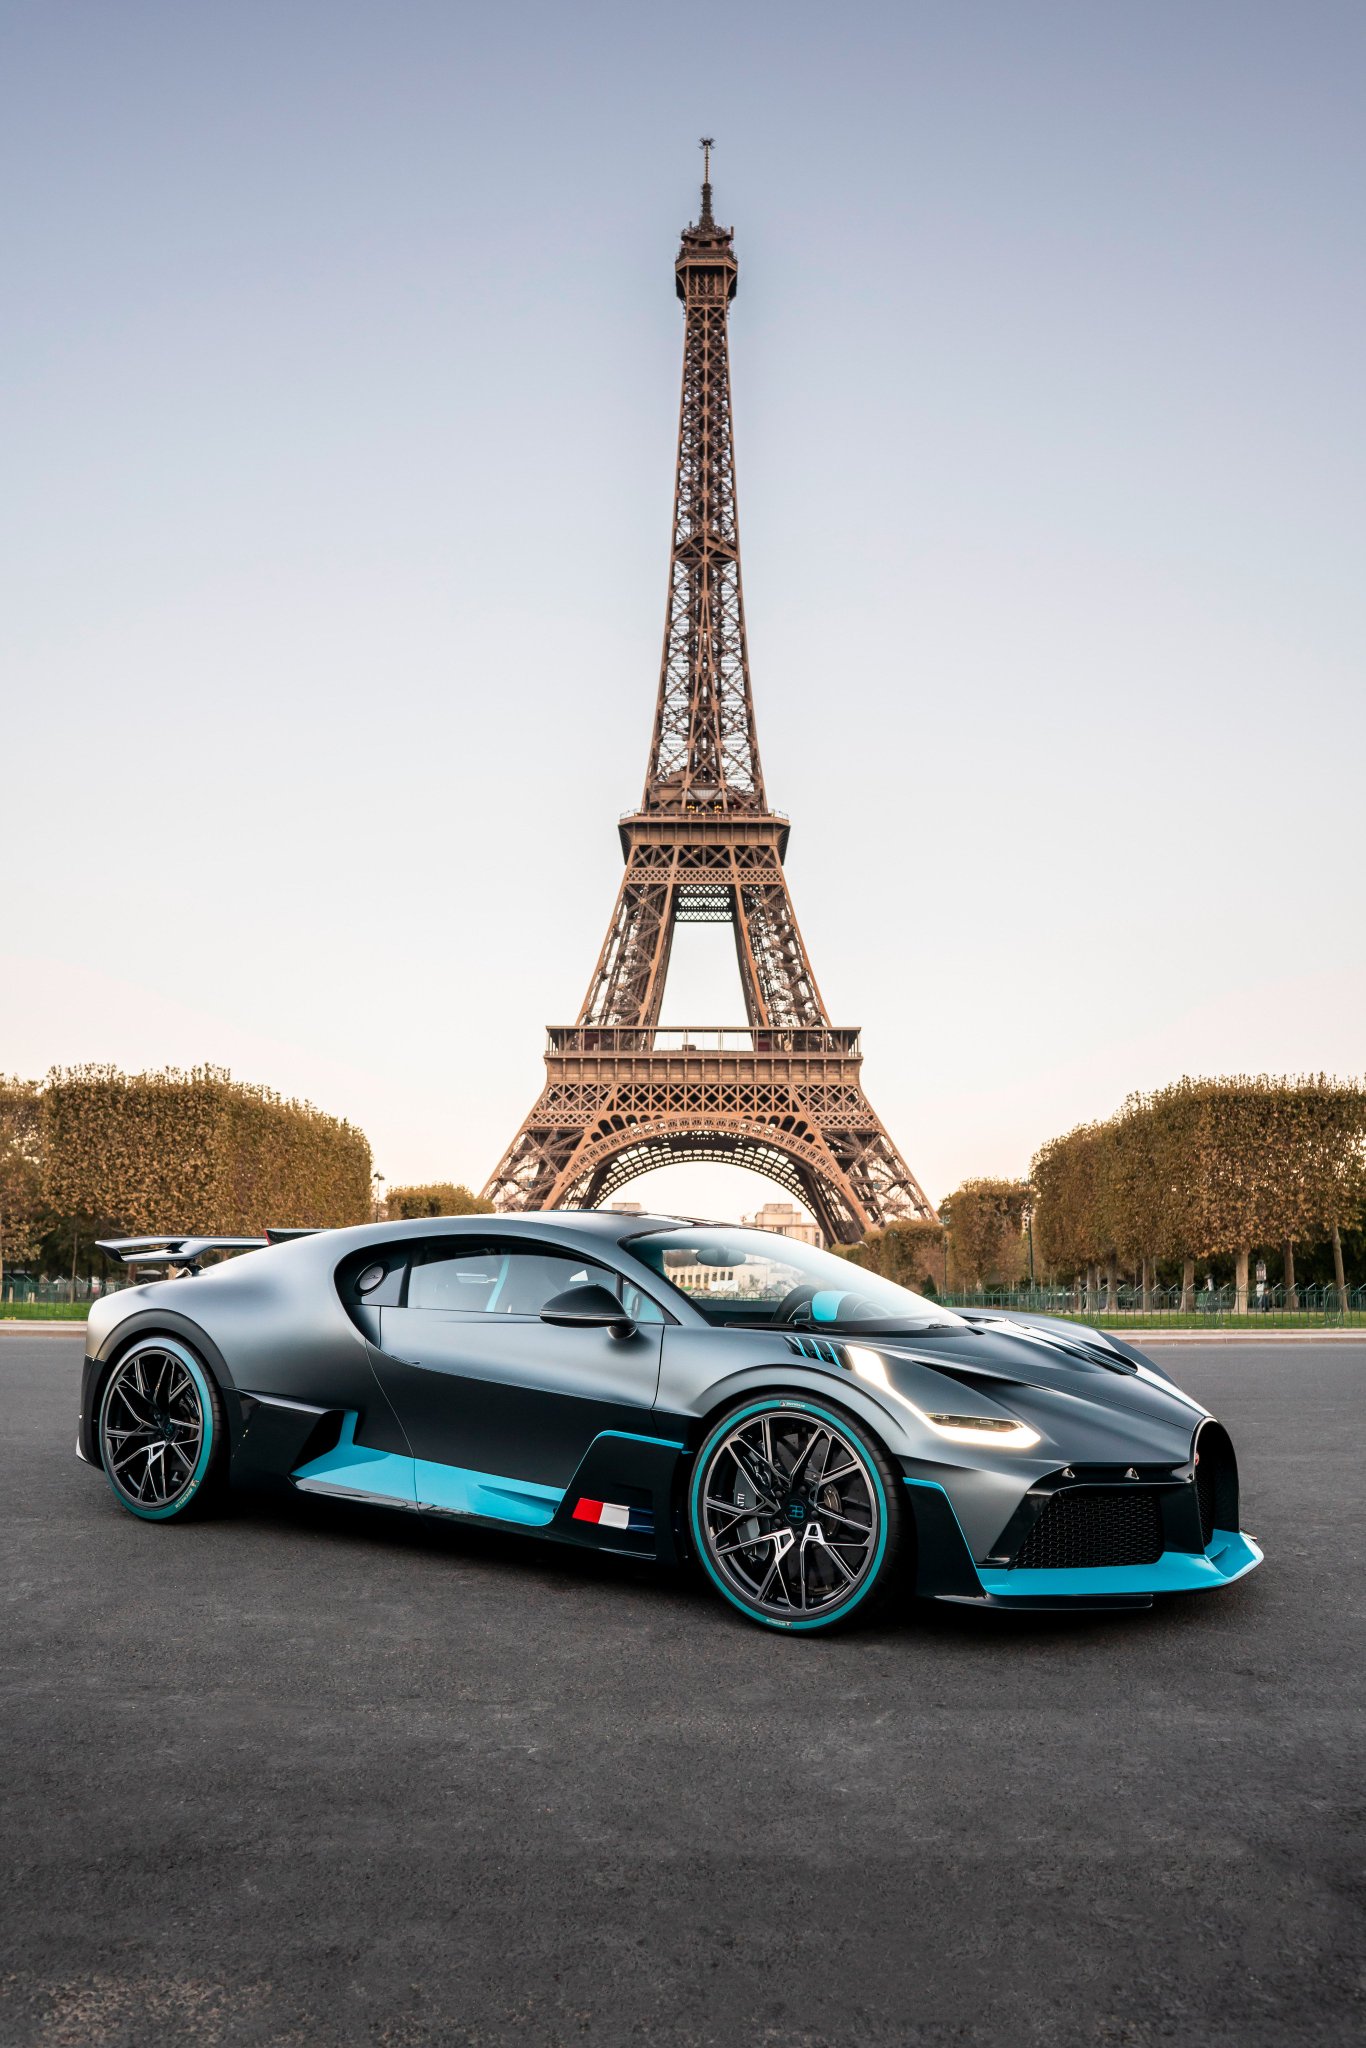 Nếu bạn đam mê sự độc đáo, tinh tế và cá tính, thiết kế xe Bugatti khá là dành cho bạn. Bức ảnh này sừng sững và mạnh mẽ, đưng sau đó là tỉ mỉ và tinh tế. Không đơn giản chỉ là một chiếc xe, mà còn là một tác phẩm nghệ thuật mà bạn chắc chắn sẽ yêu thích.